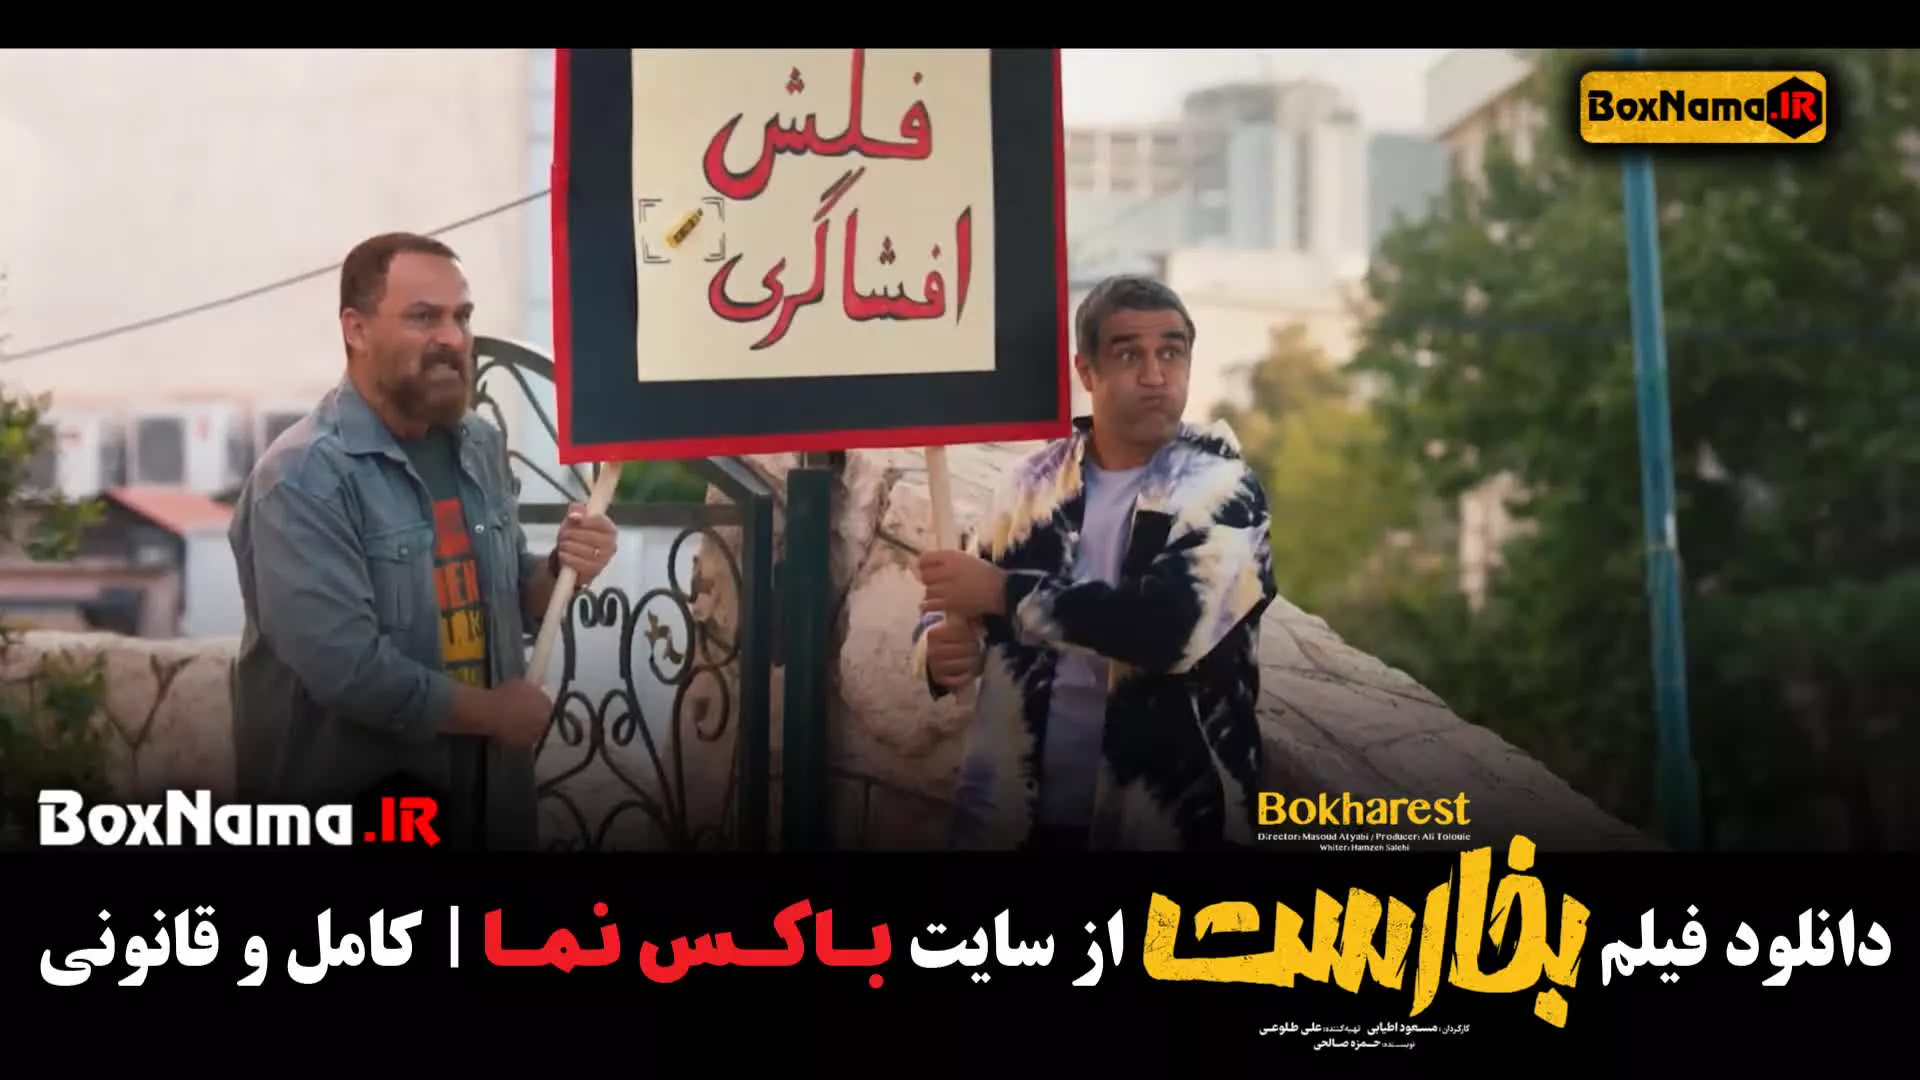 تماشای انلاین بخارست فیلم سنیمایی کمدی ایرانی امیرحسین آرمان